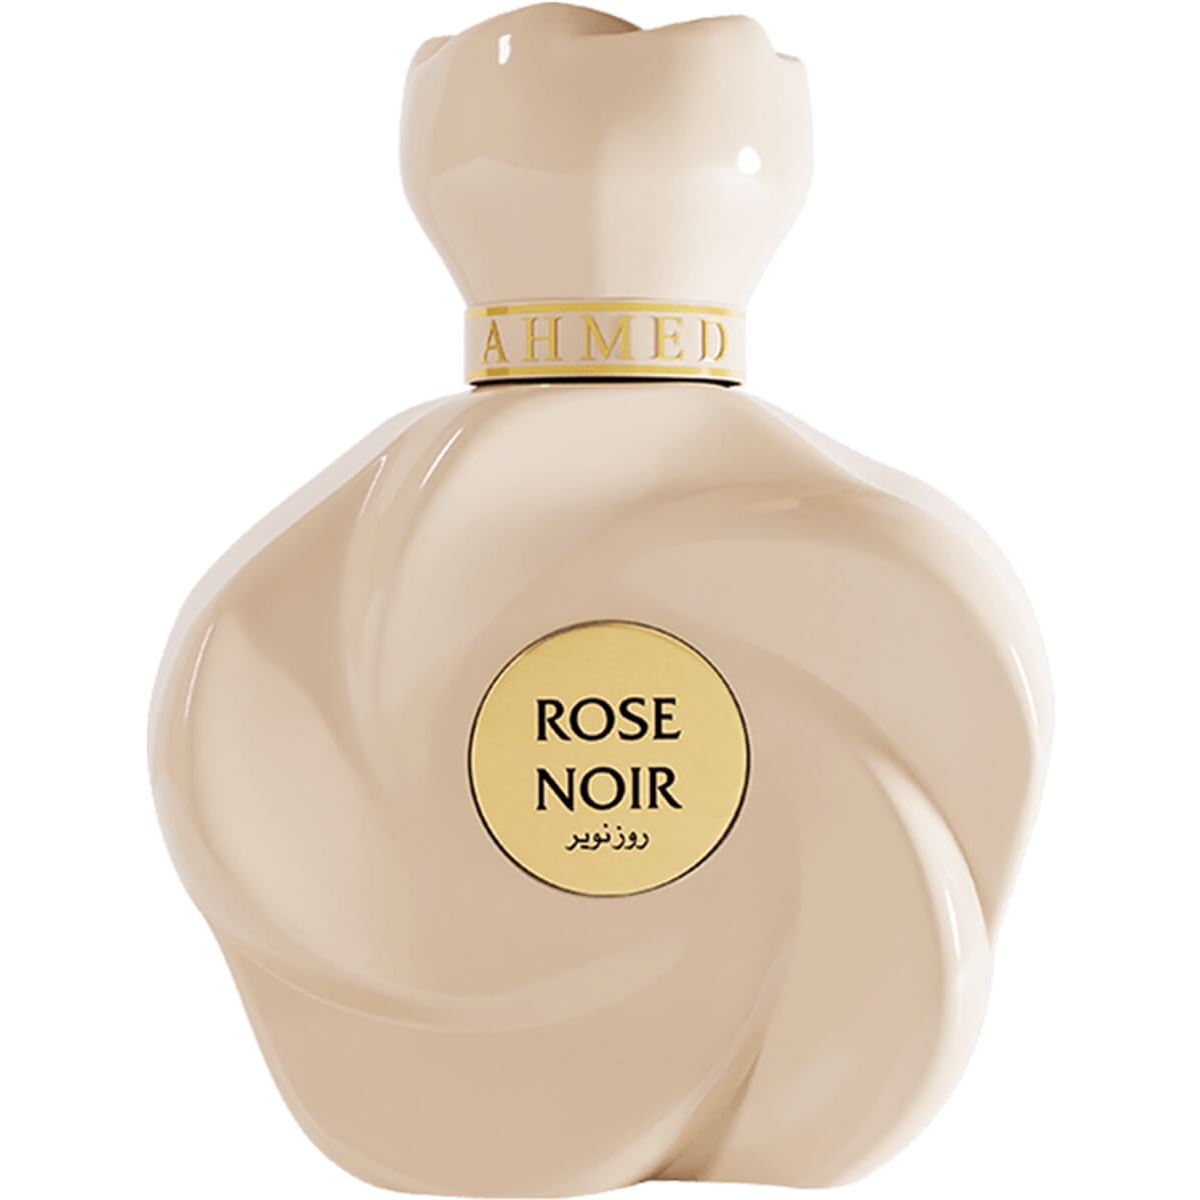 Rose Noir Ahmed al Maghribi Perfumes Perfumes, Profumi Da Donna, Arada Perfumes